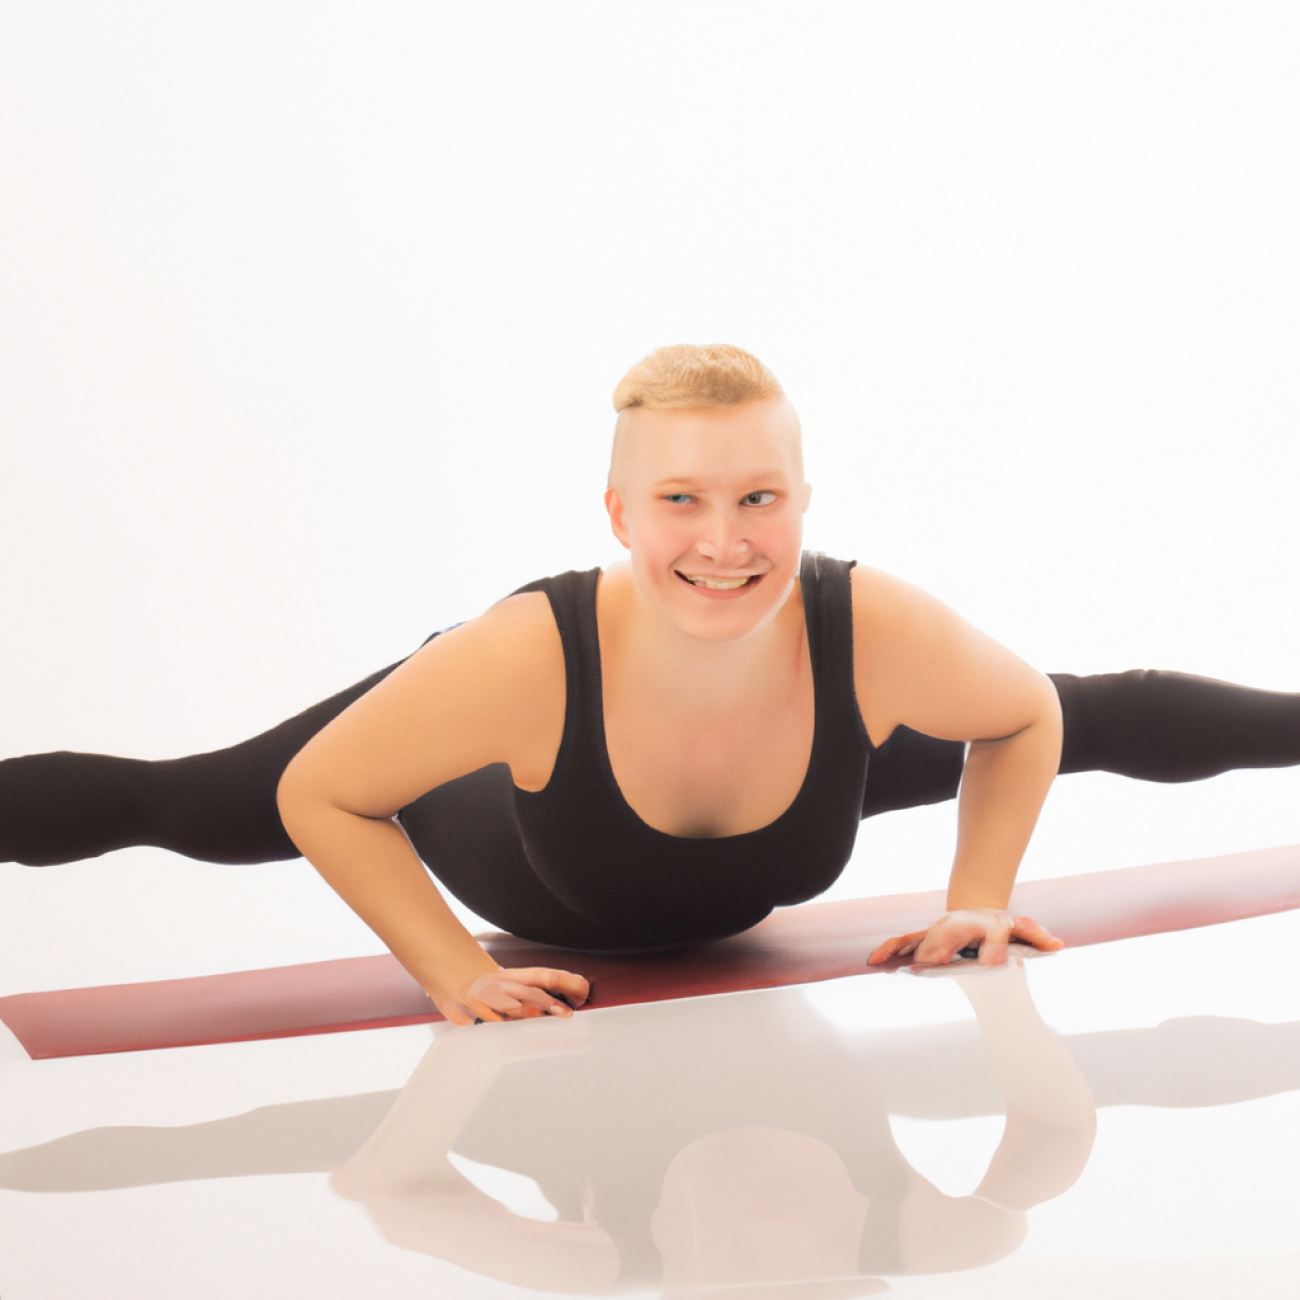 6. Jak Pilates může pomoci při zlepšování držení těla a flexibility